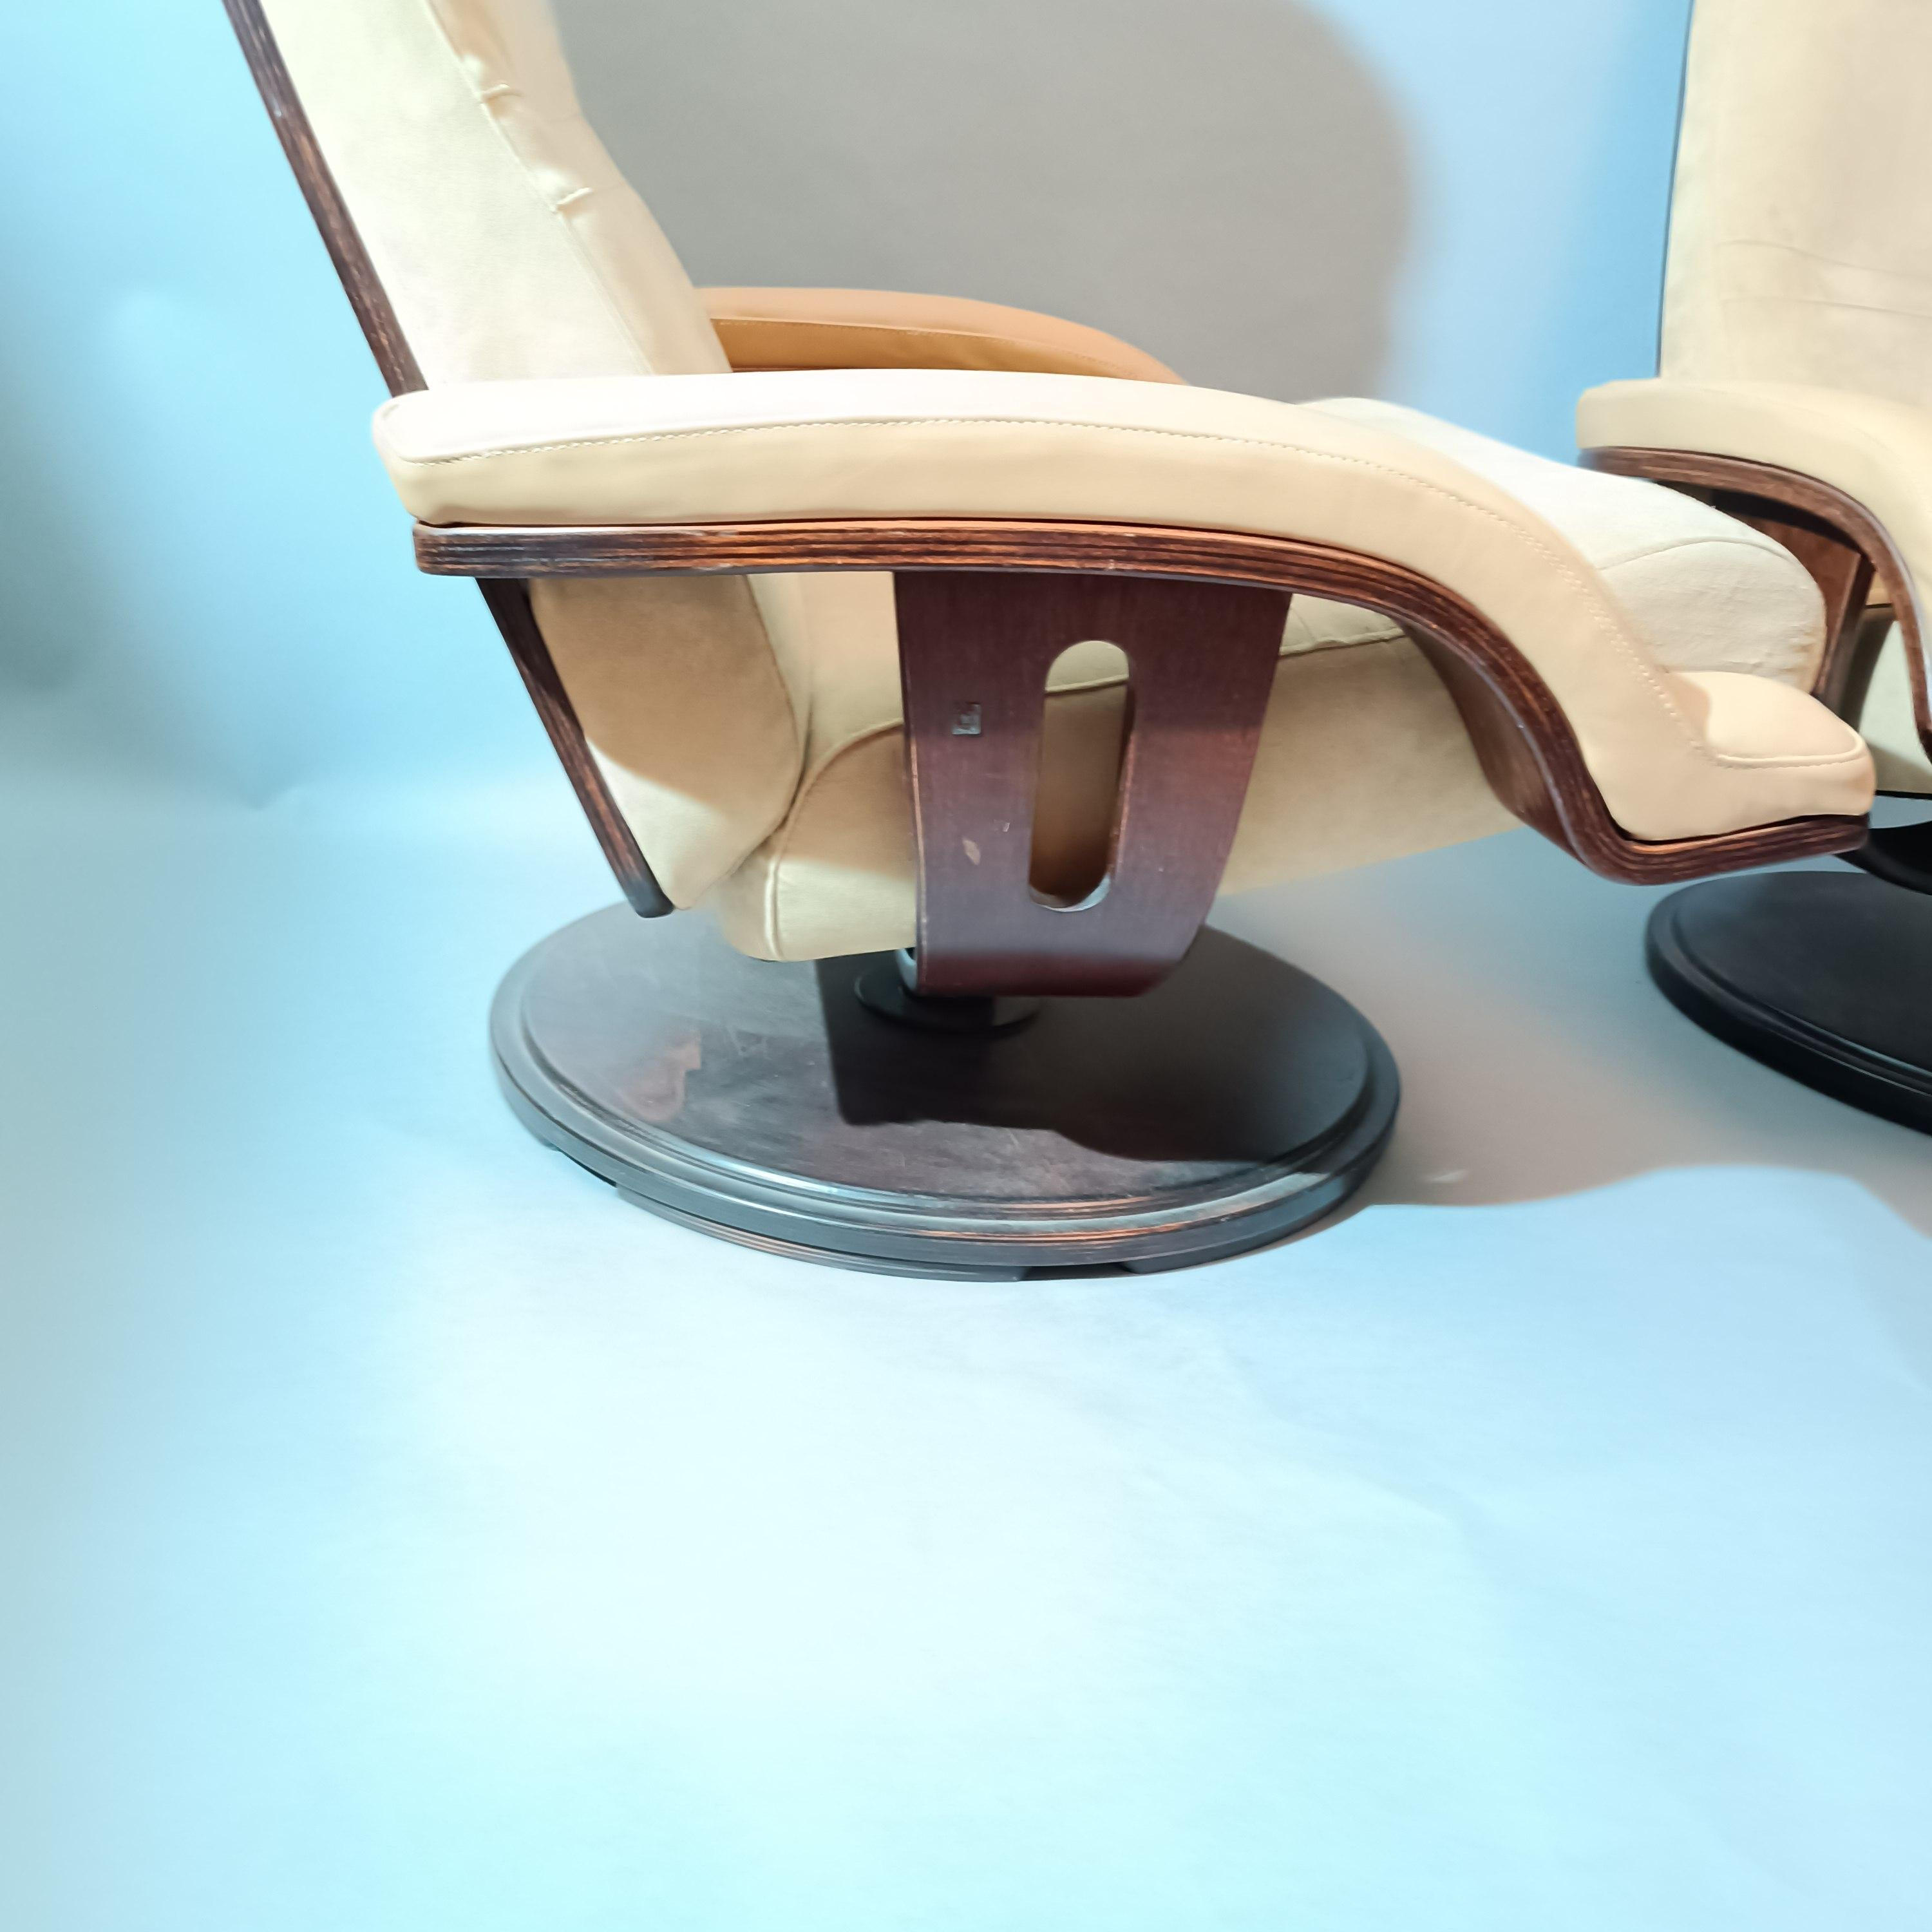 Paire de fauteuils pivotants et basculants des designers Takashi Okamura et Erik Marquardsen pour l'éditeur Nelo of Sweden.
Recouverts d'Alcantara et cuir beige. Piètement en palissandre.
Estampille sur chaque fauteuil.
circa 1970.